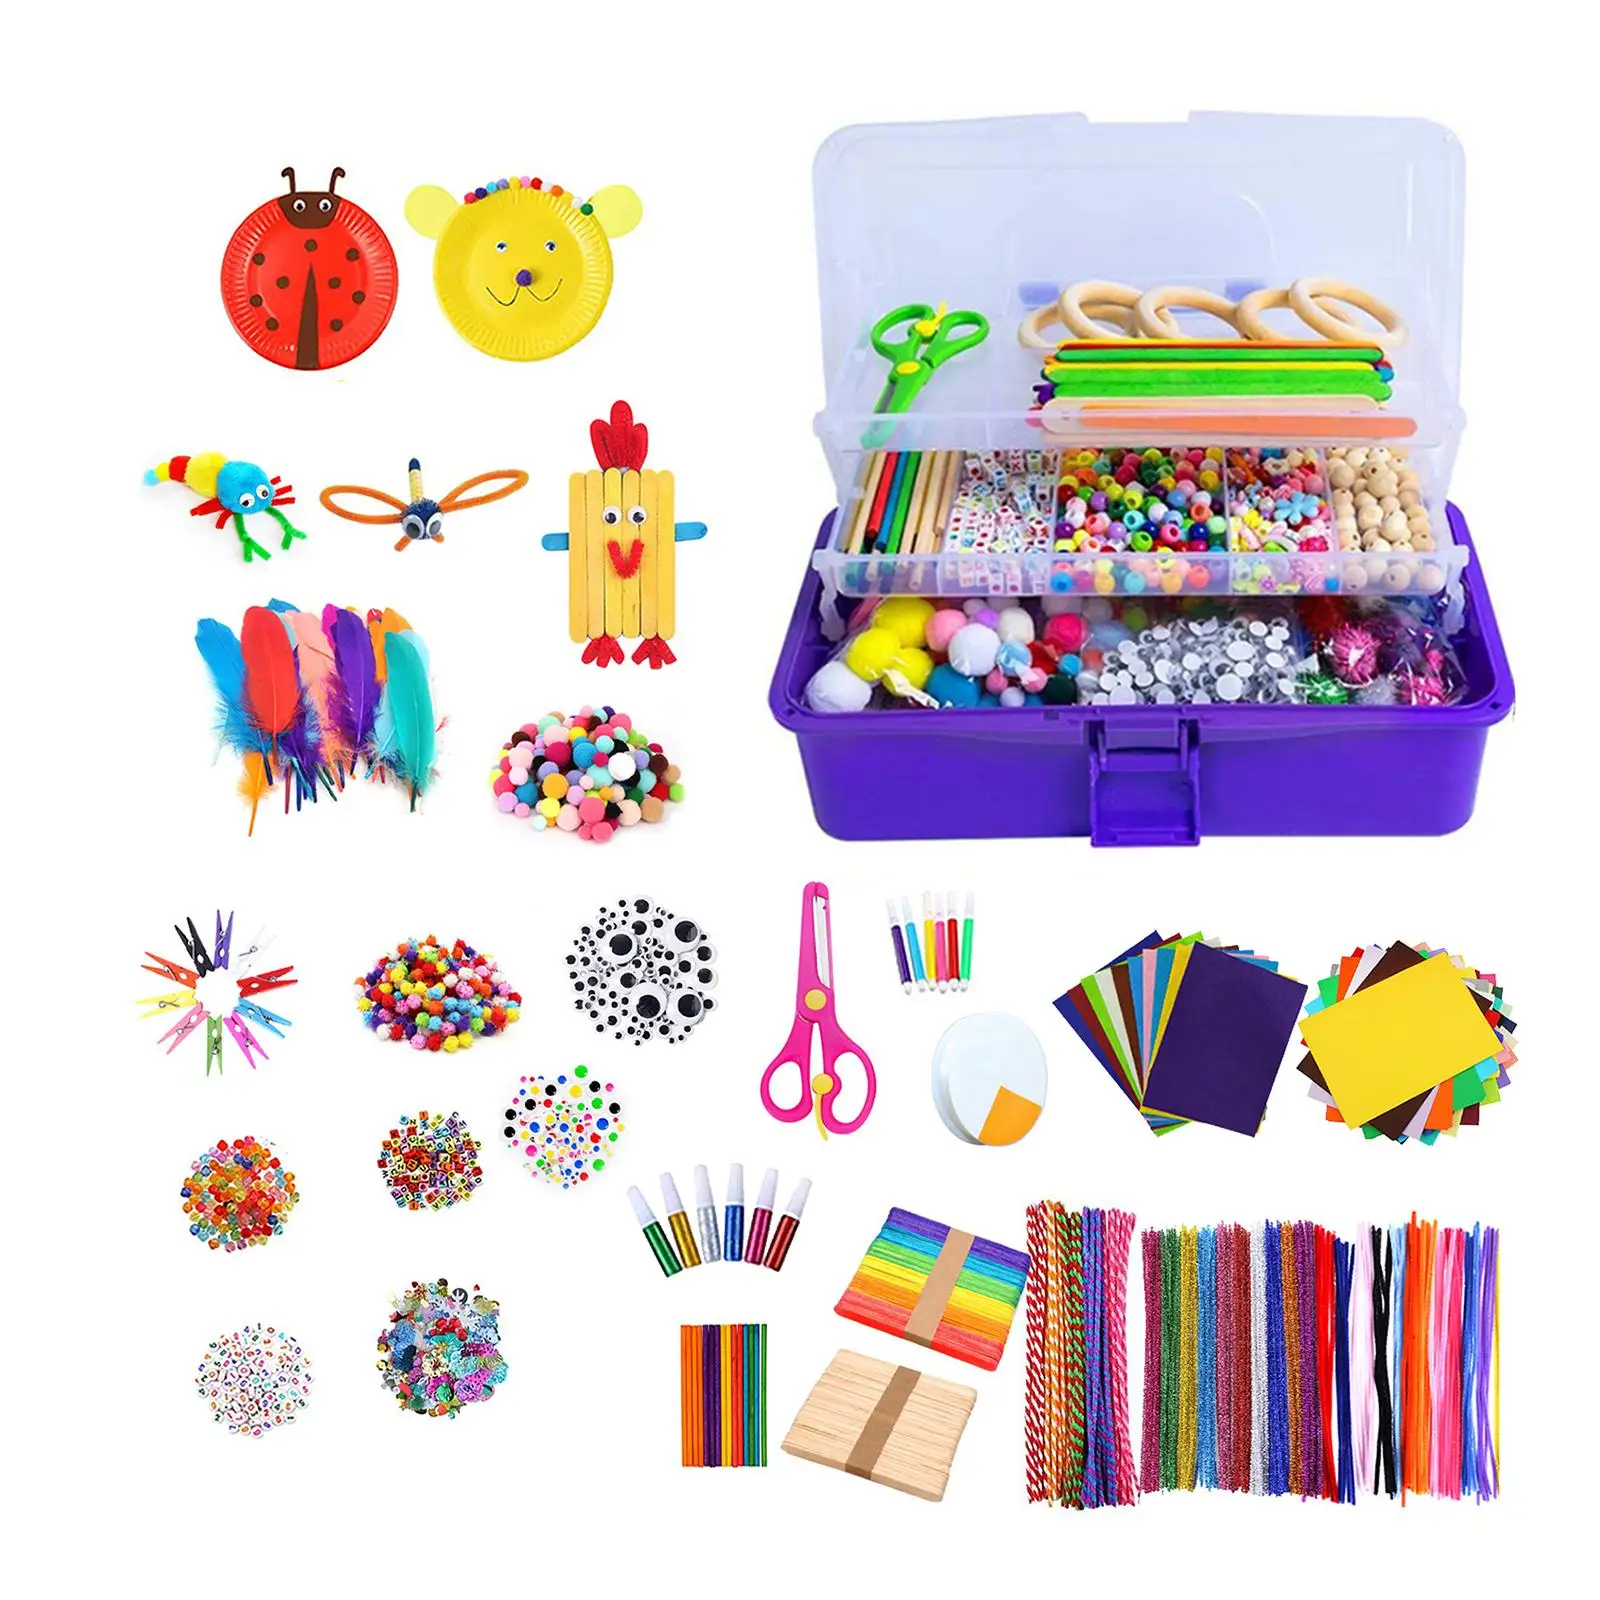 Kids Arts & Craft Supplies Arts Crafts Kit for Age 4 5 6 7 8 9 Kids Children